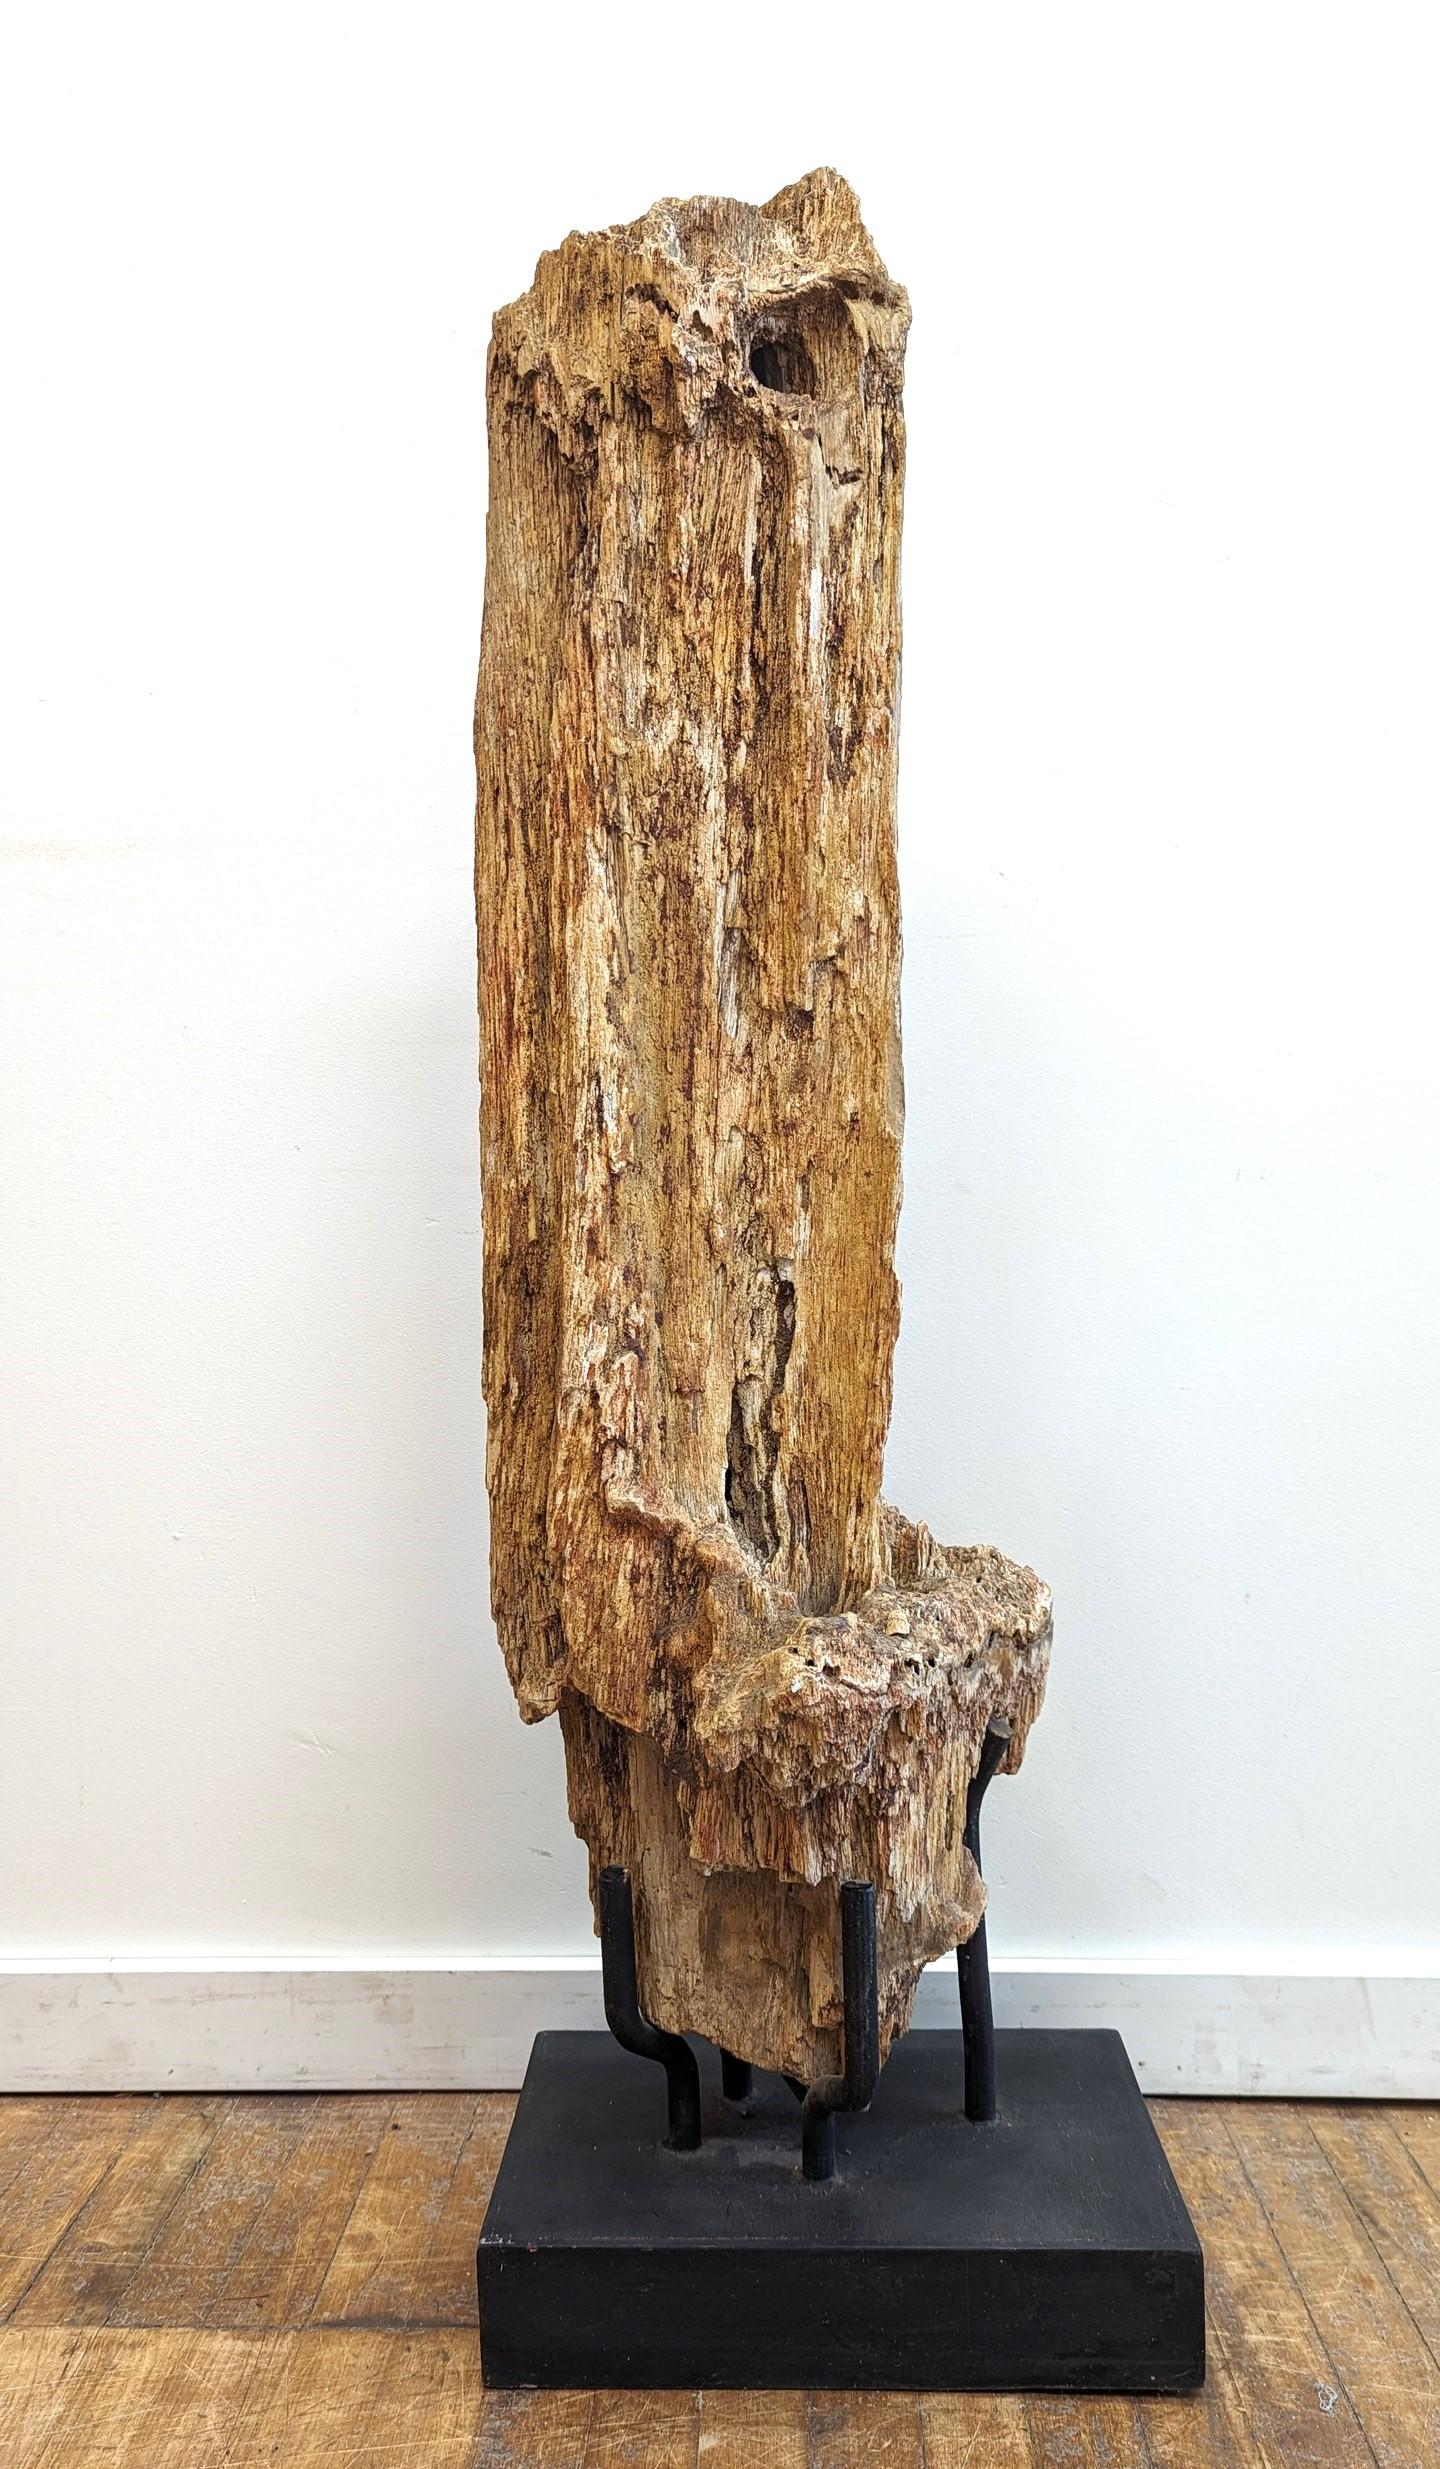 Ein natürliches Stück versteinertes Holz auf einem Ständer.  Vollständig organisches, natürliches Rohfossil, für die Ausstellung gereinigt.  Der natürliche Prozess der Entstehung von versteinertem Holz dauert Hunderte bis Tausende und Millionen von